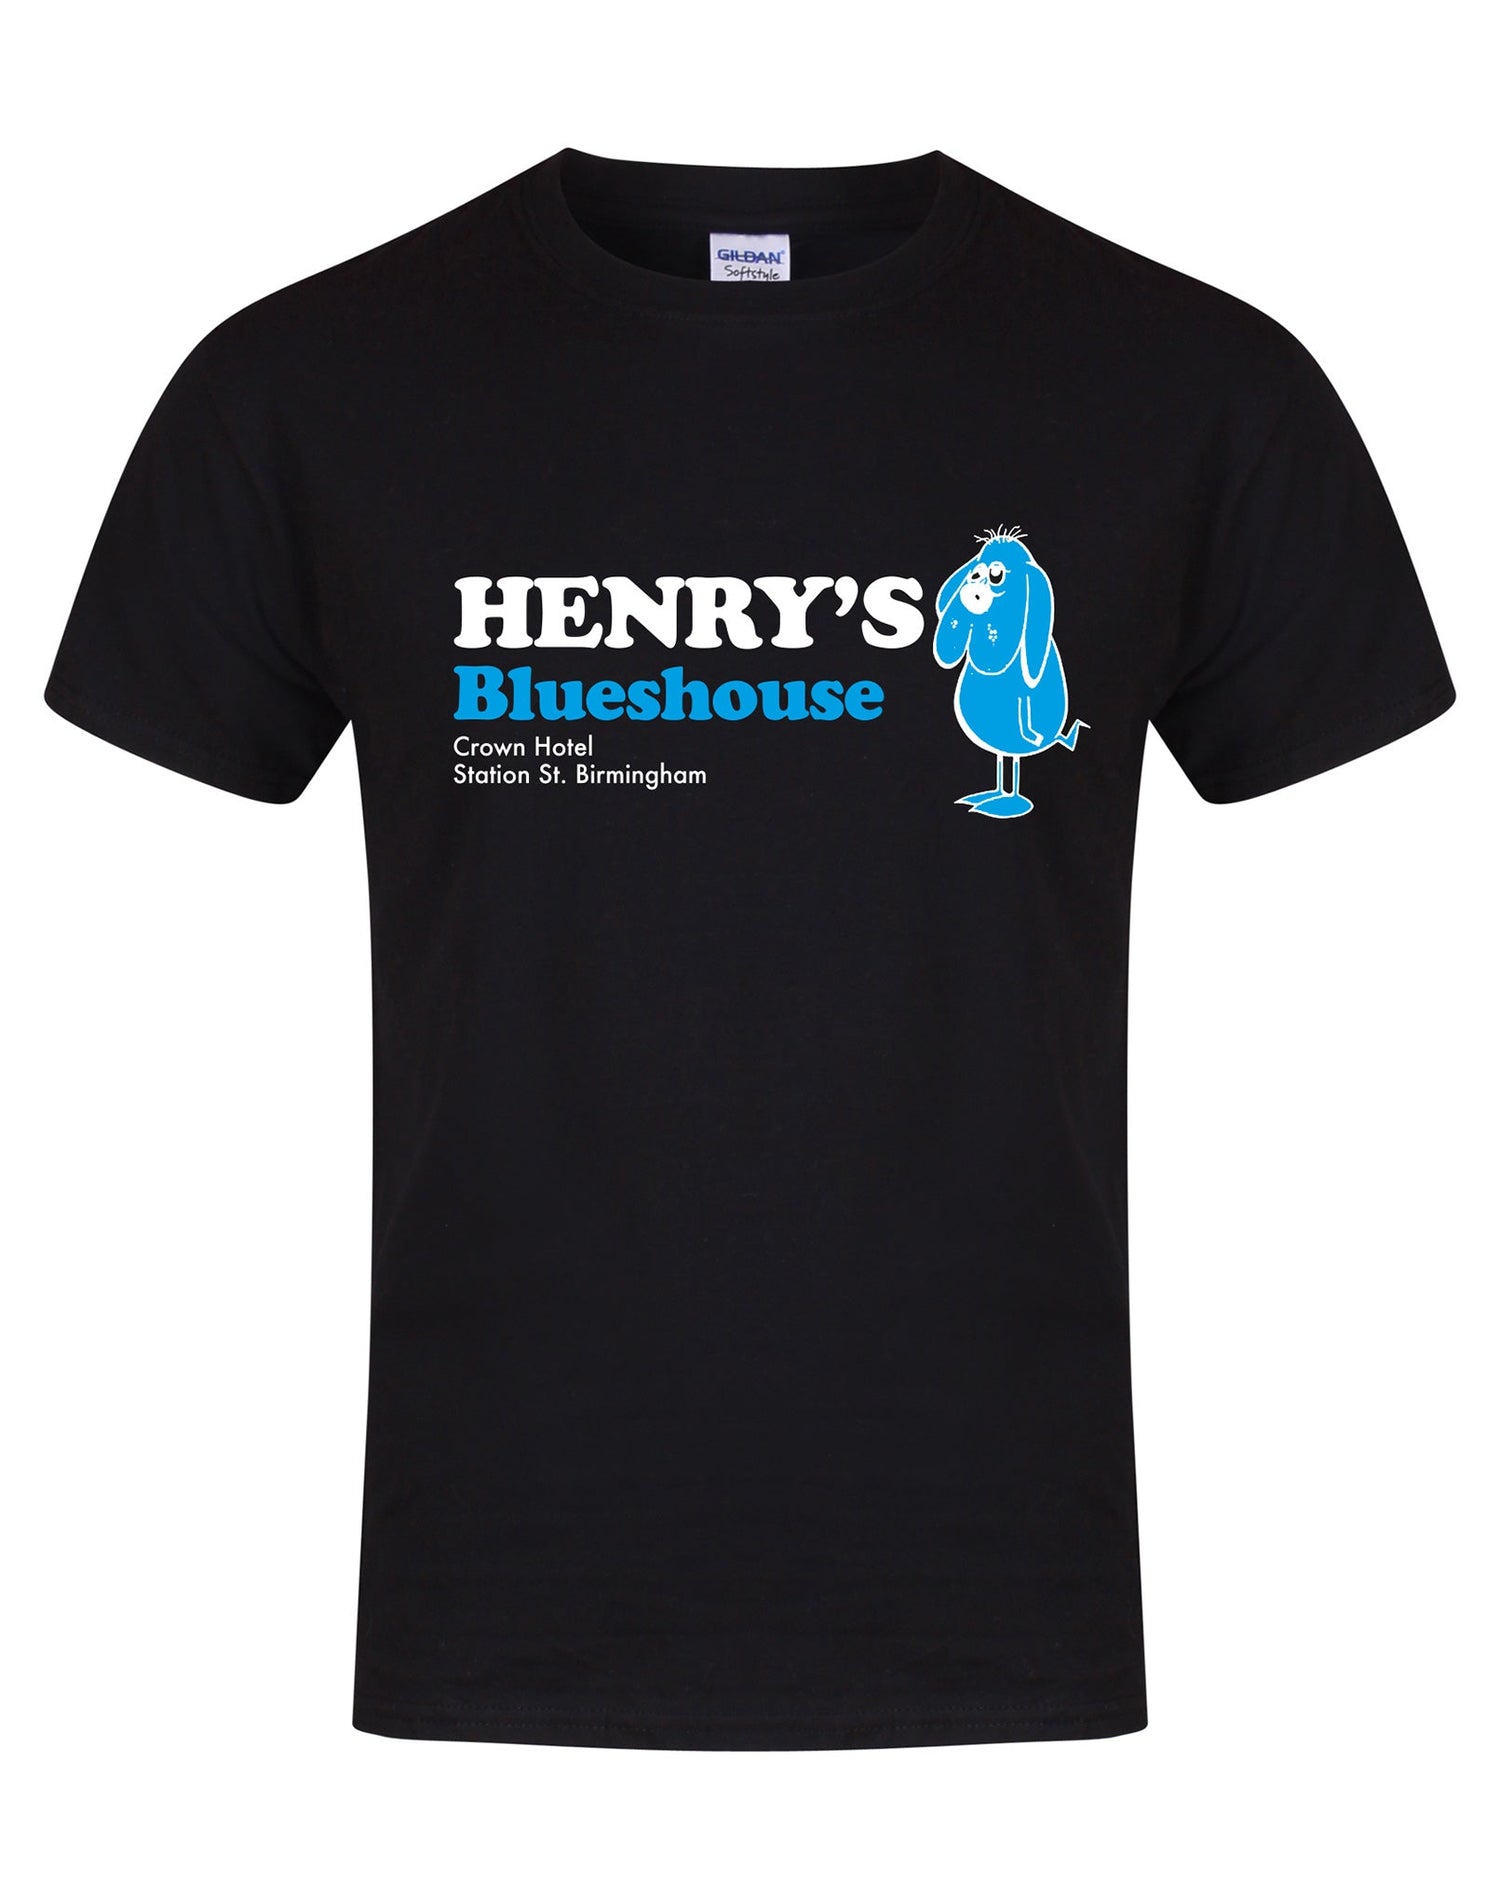 Henry's Blueshouse